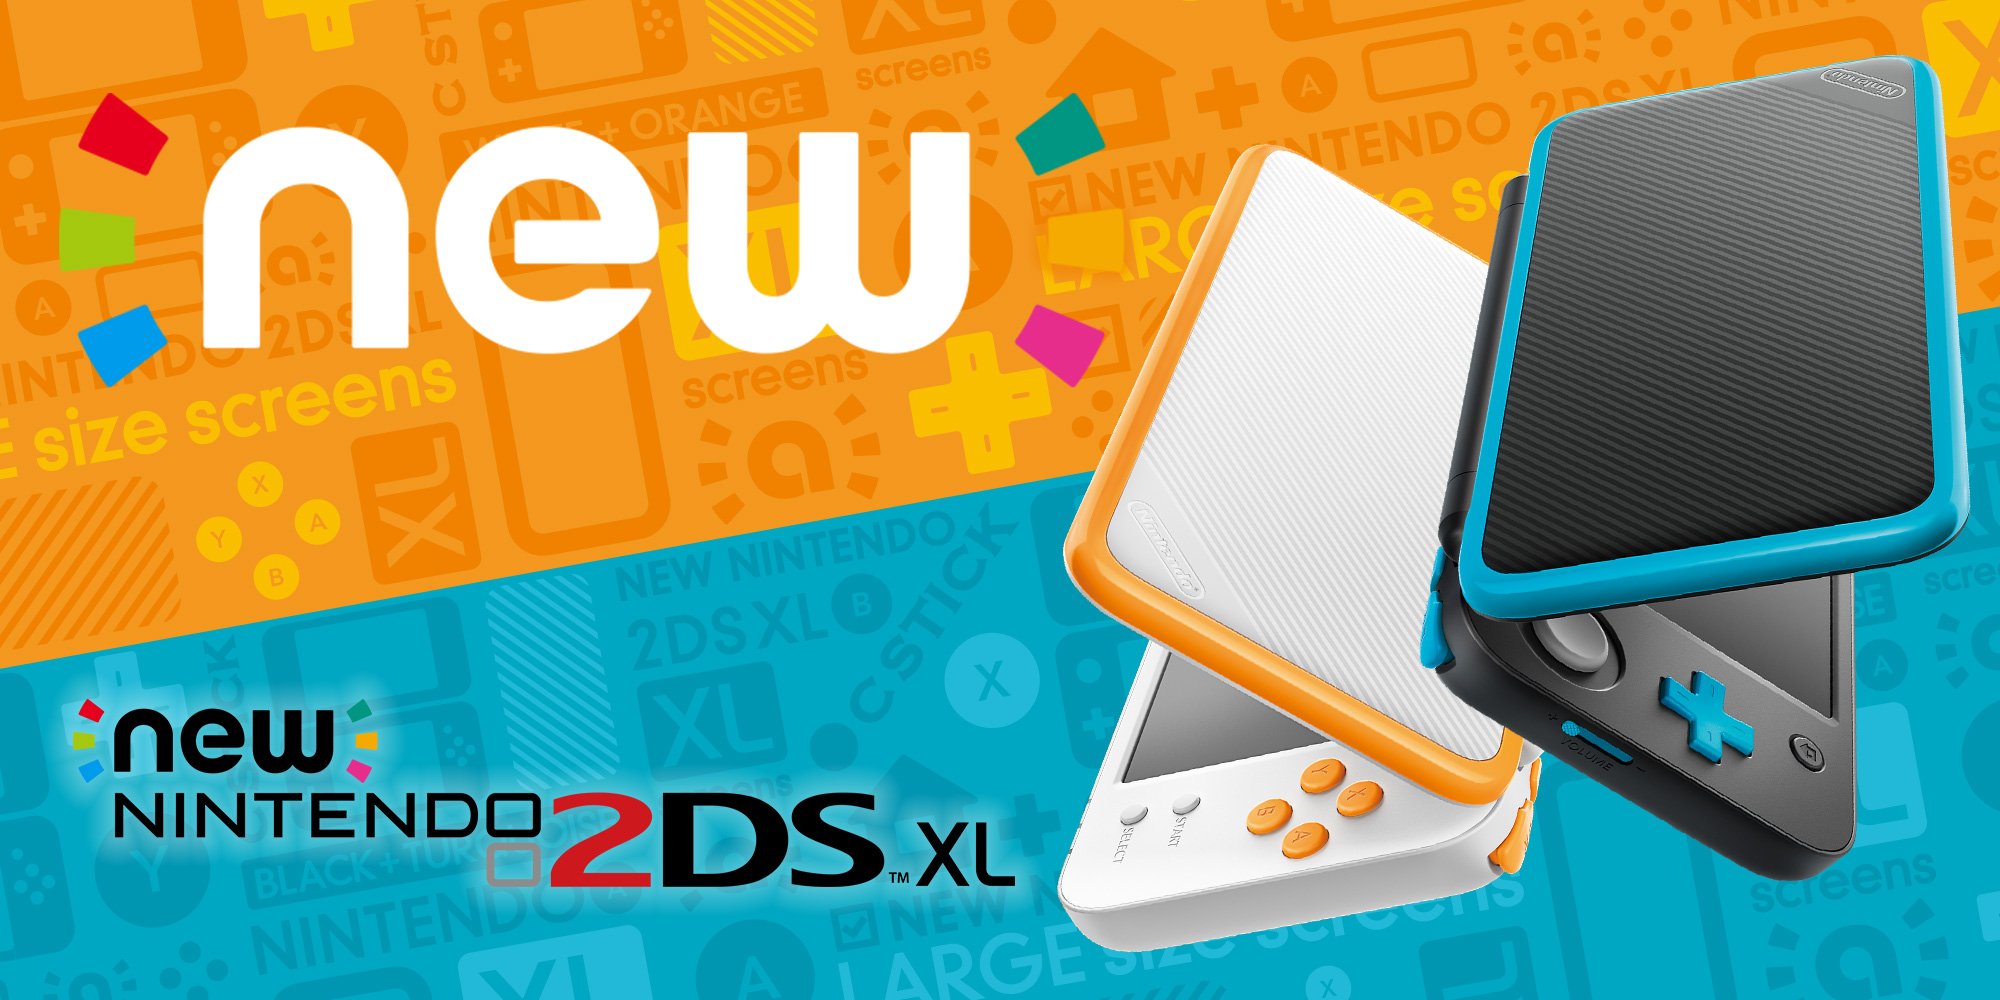 Il 28 luglio arriva un nuovo membro della famiglia Nintendo 3DS: New Nintendo 2DS XL!